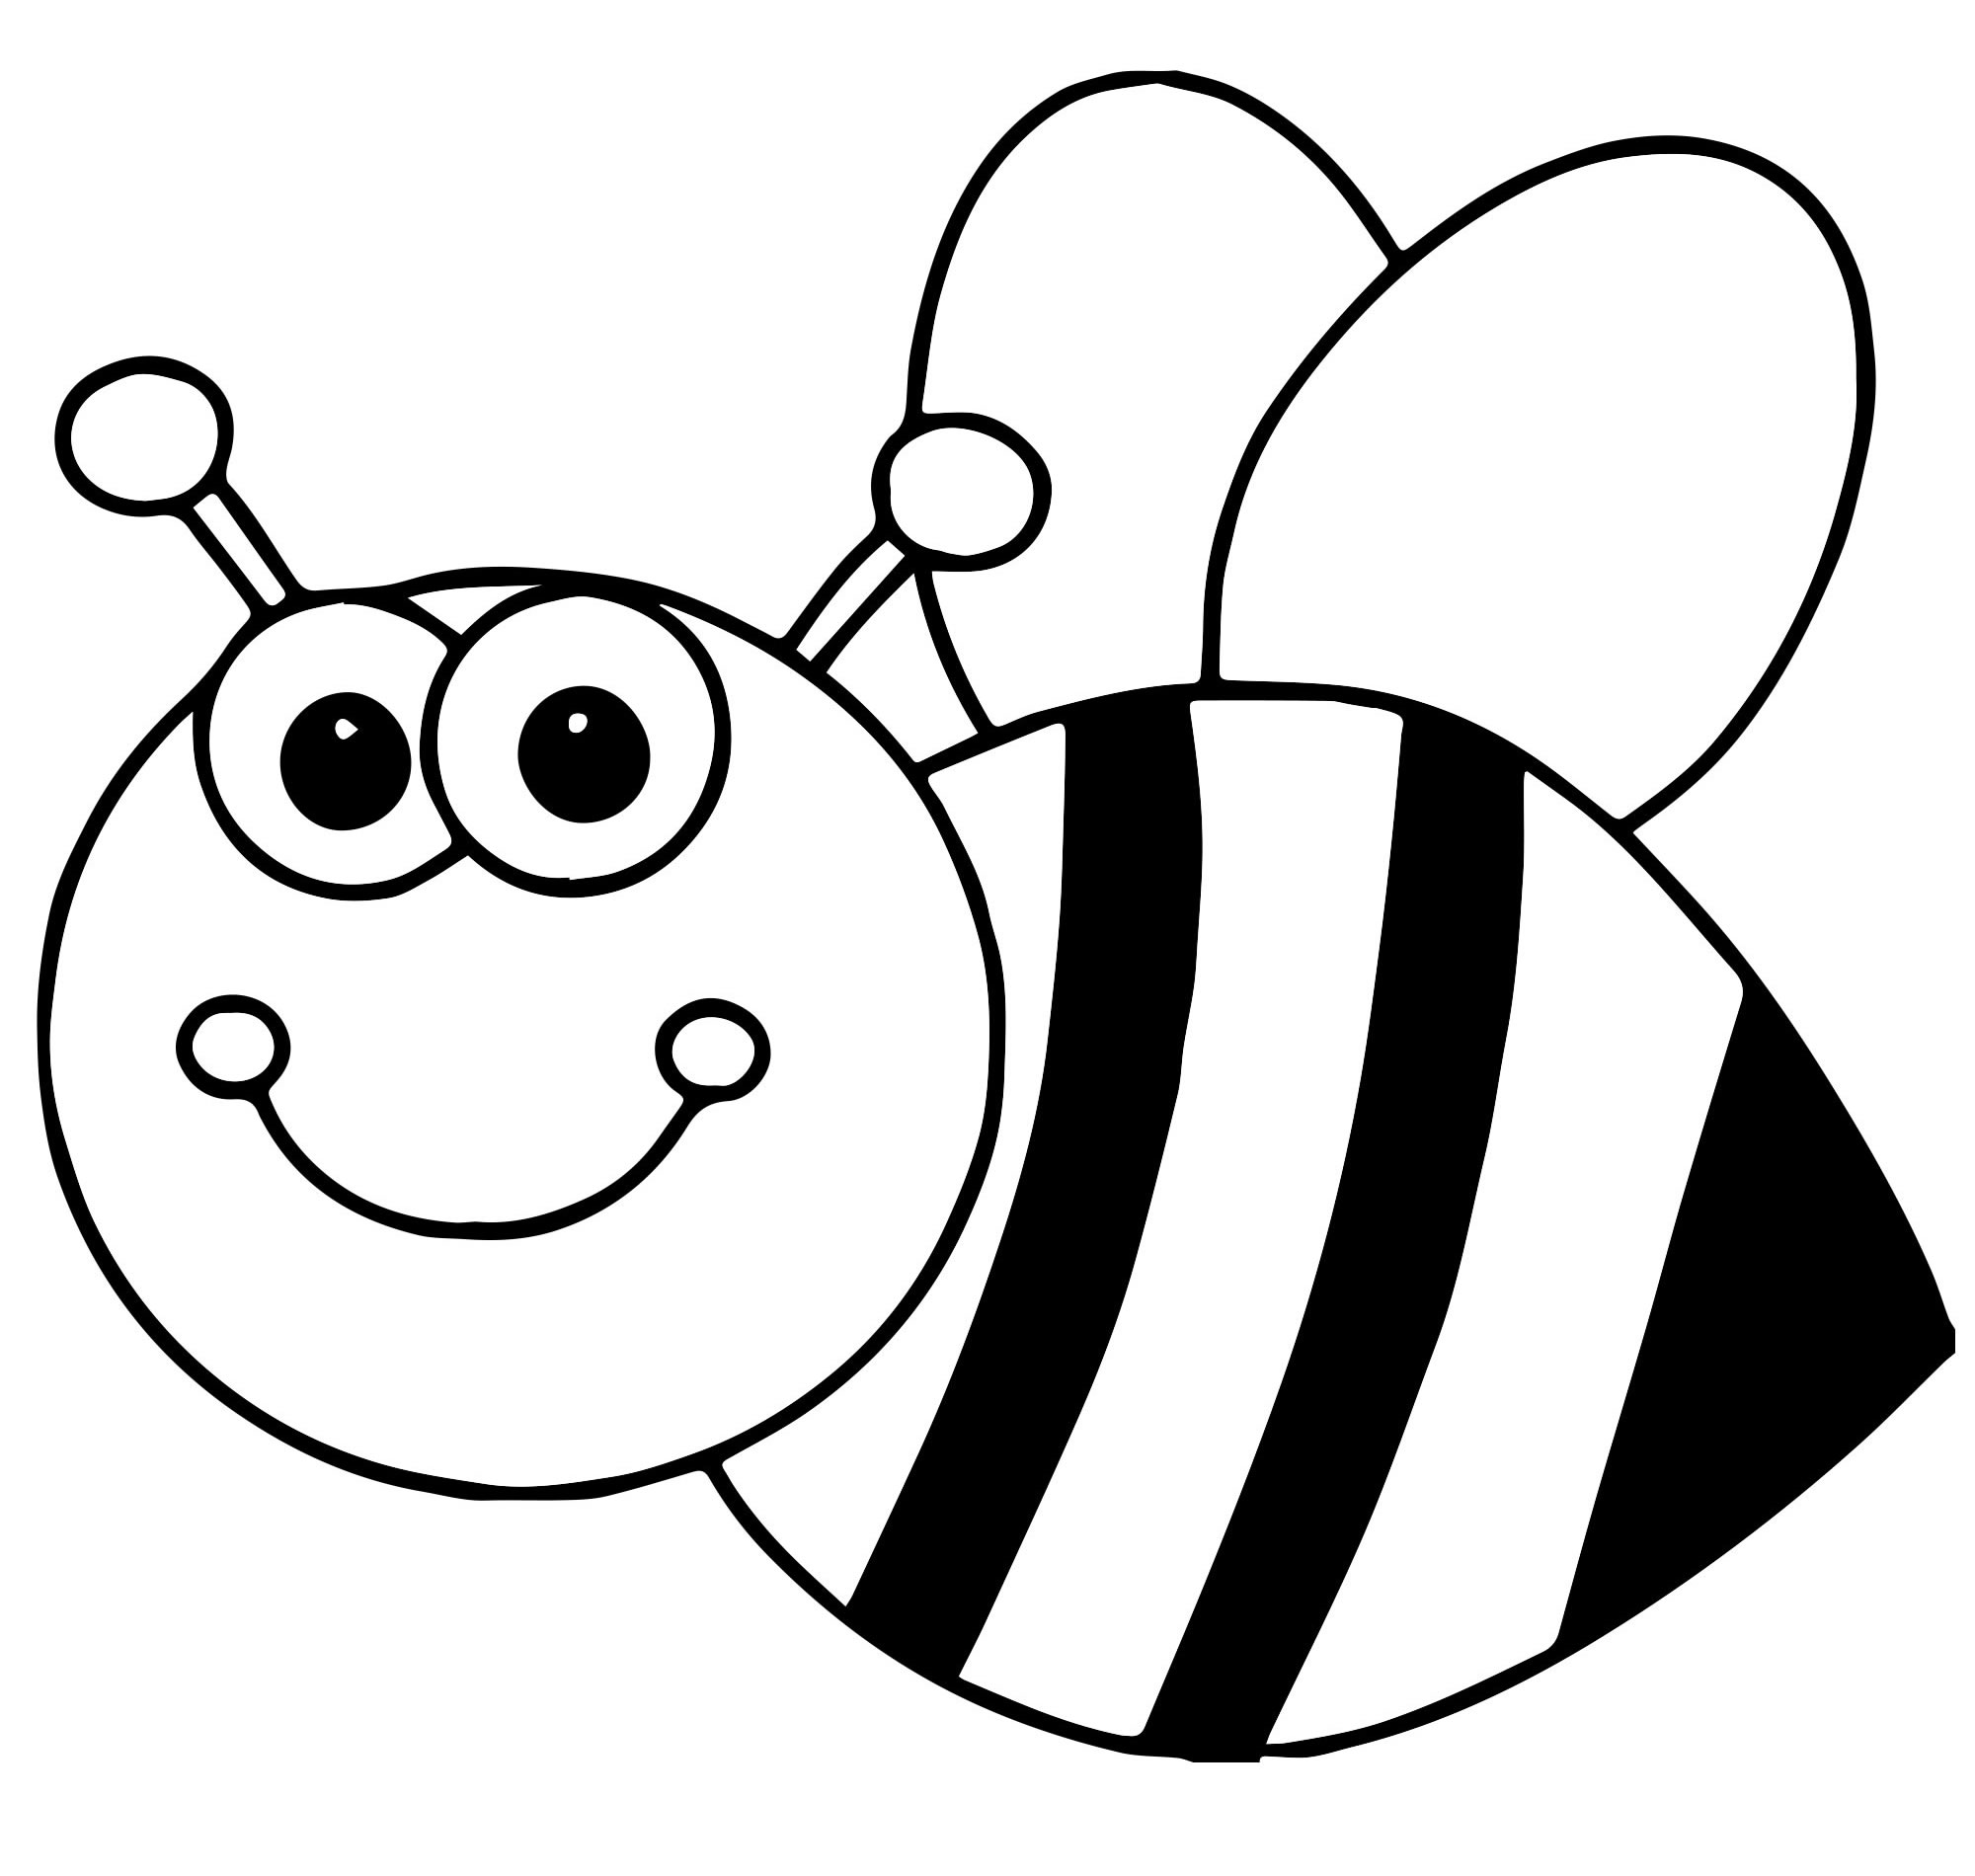 Пчелка раскраска распечатать. Пчела раскраска. Раскраска пчёлка для детей. Пчелка раскраска для малышей. Пчела раскраска для малышей.